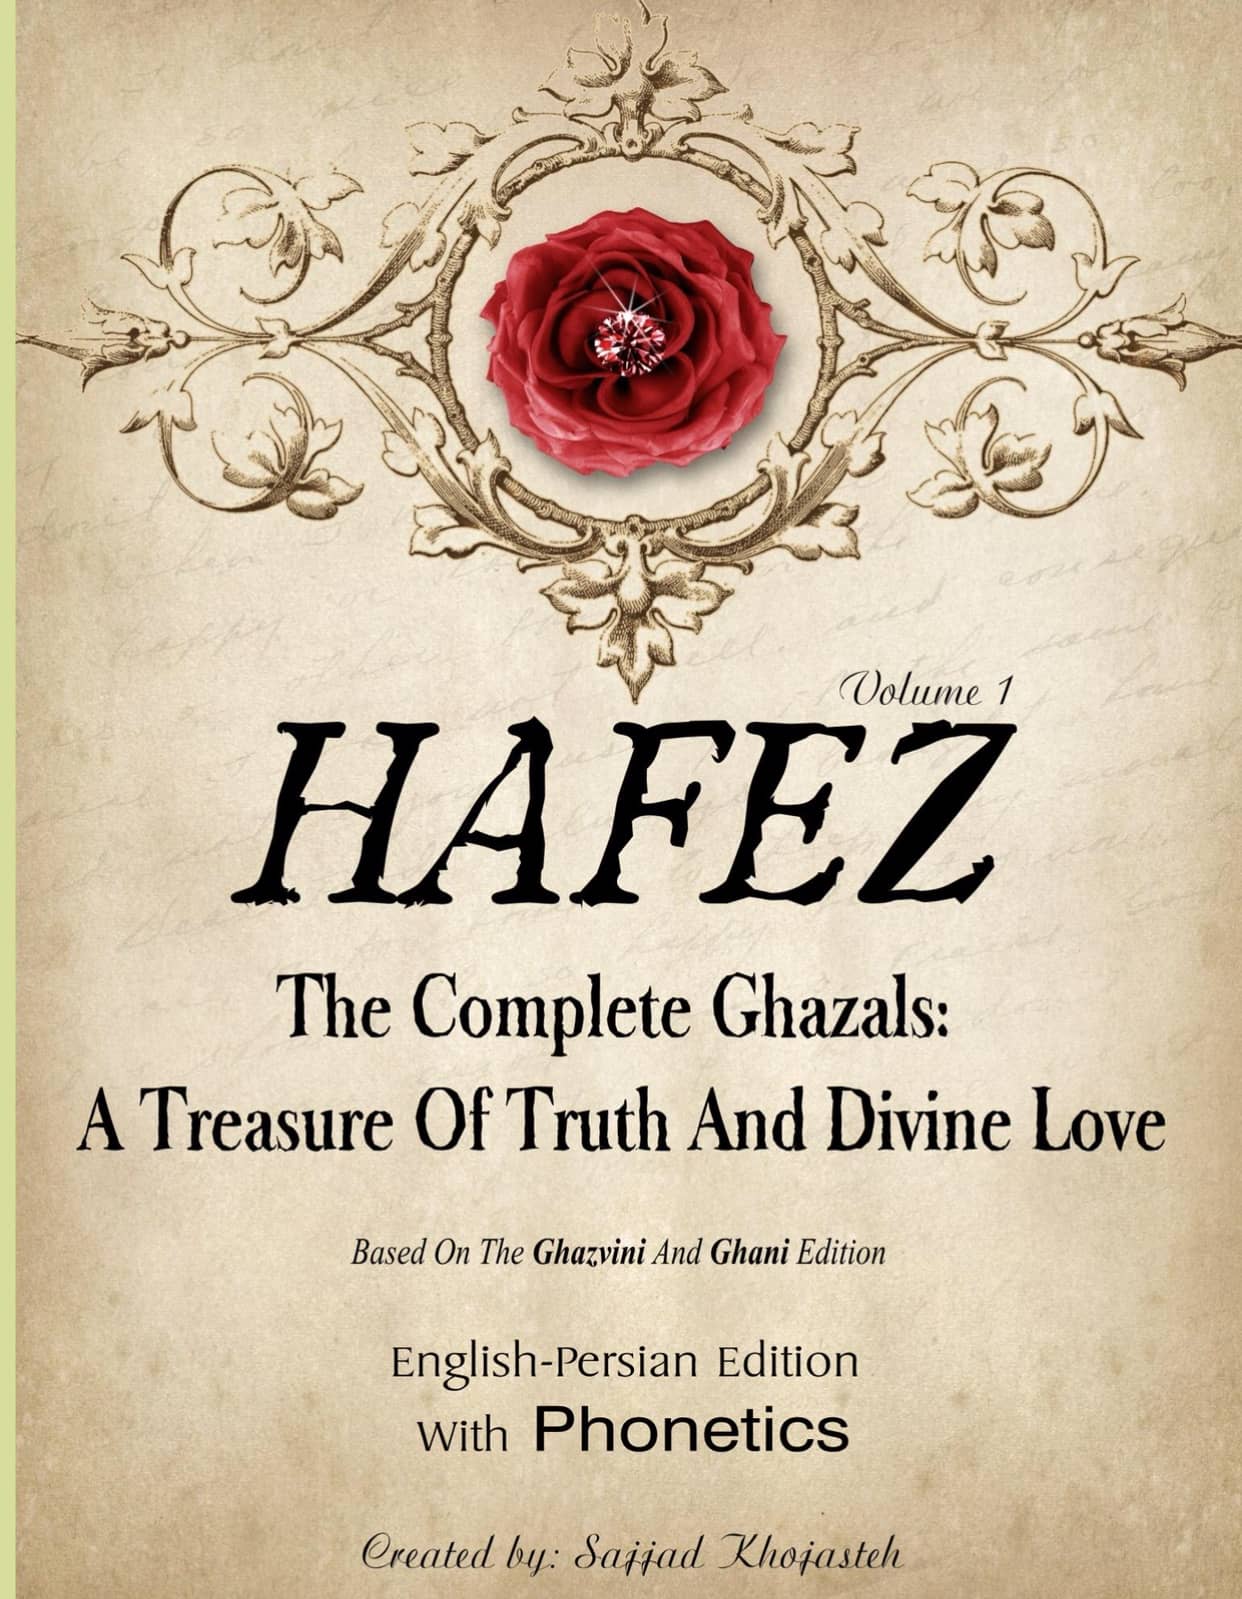 Hafez's poems